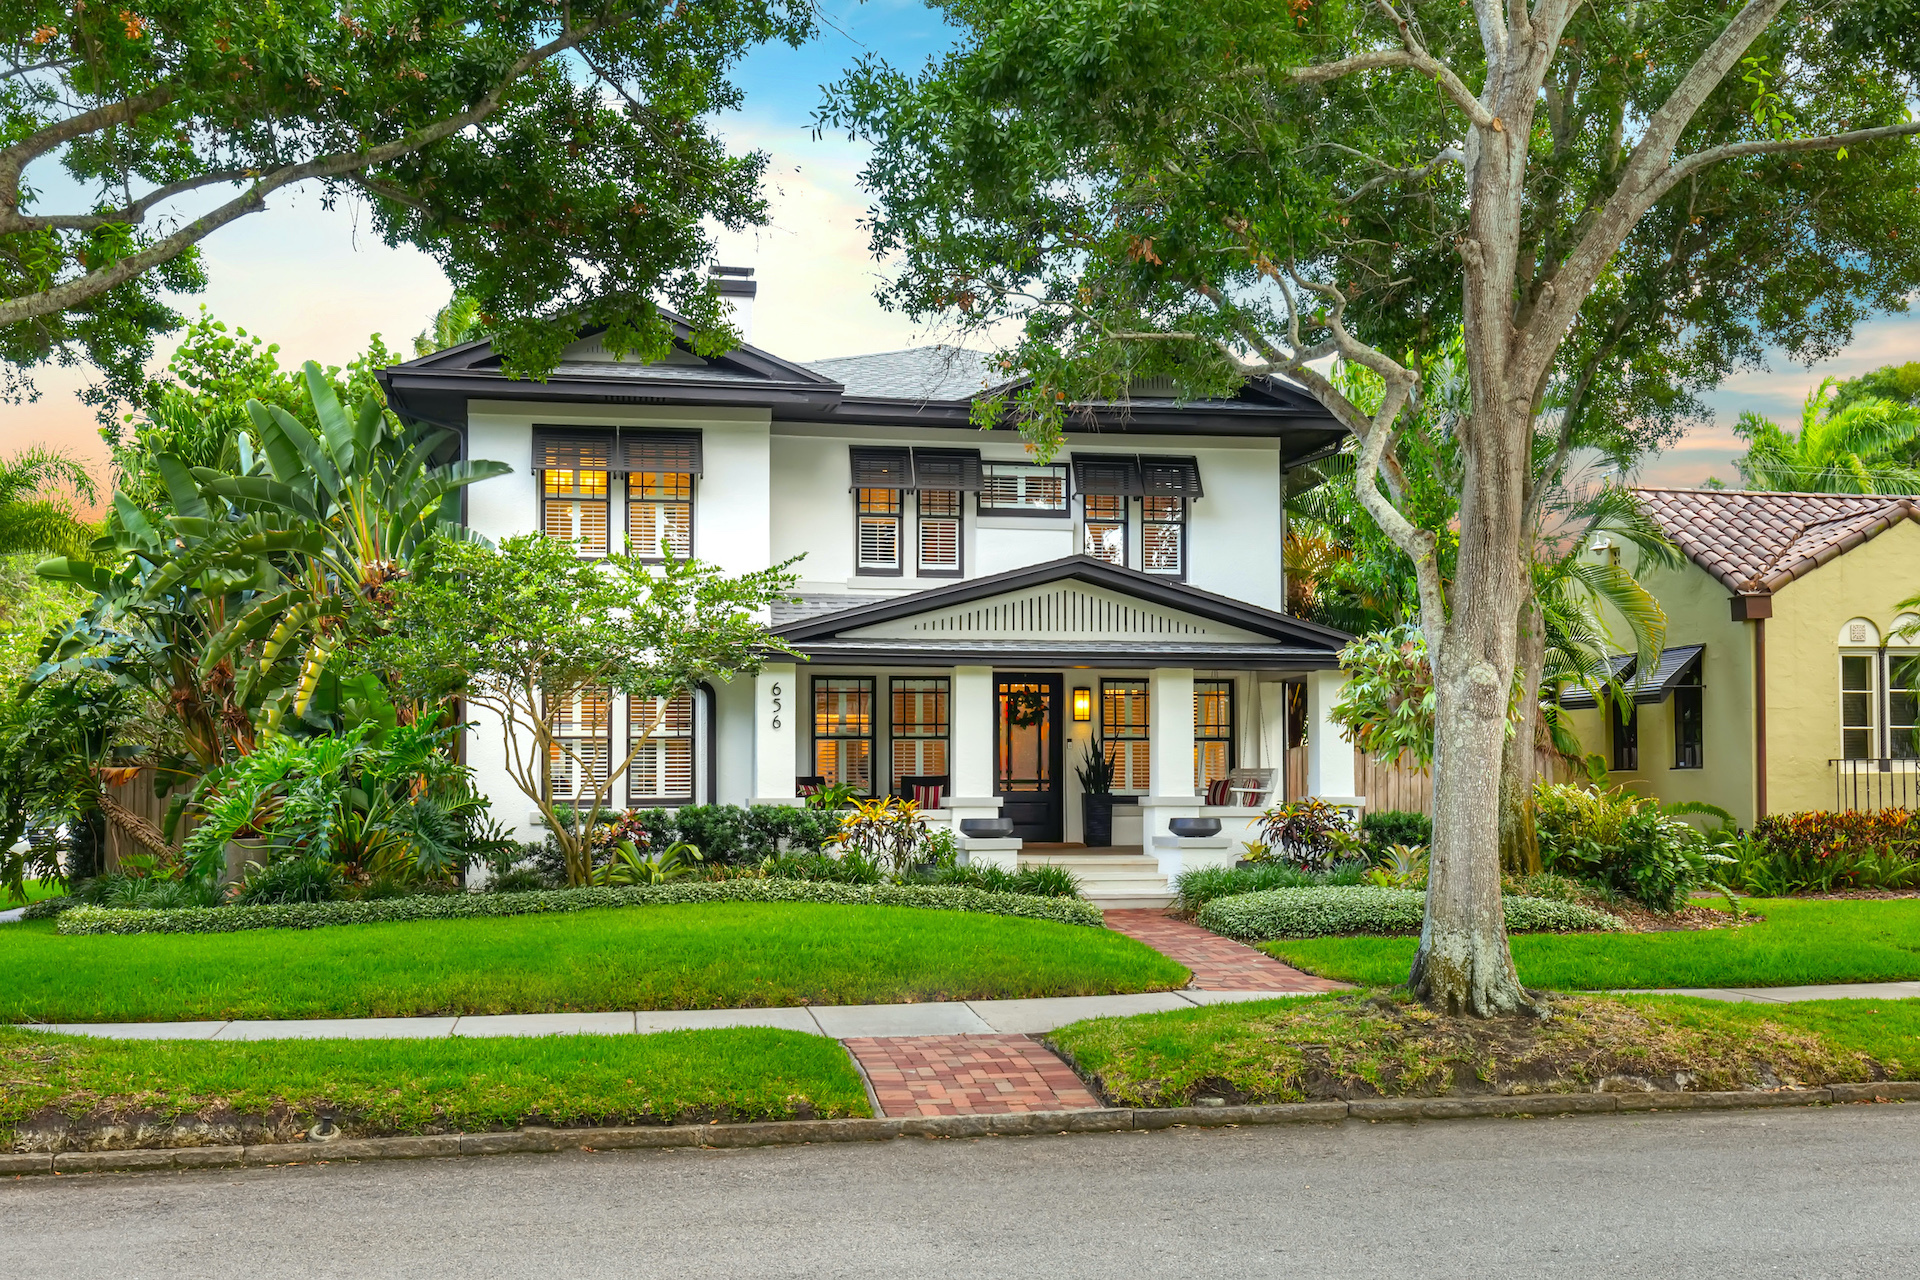 Bianca Lopez | Smith & Associates Real Estate | REALTOR | Home